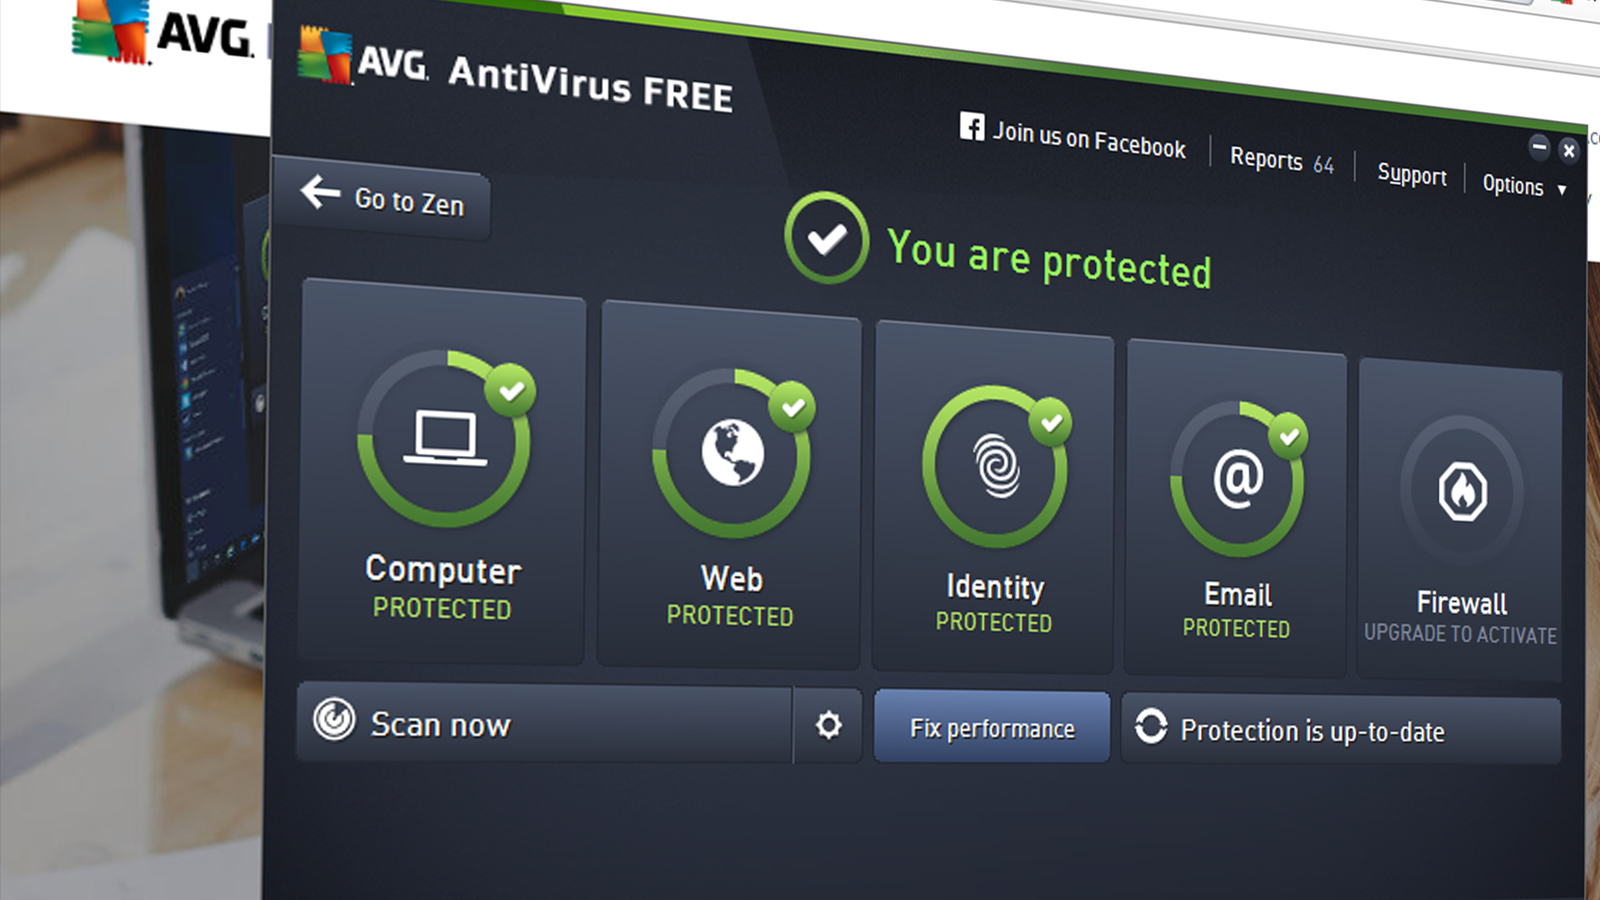 Avg antivirus free seekdop